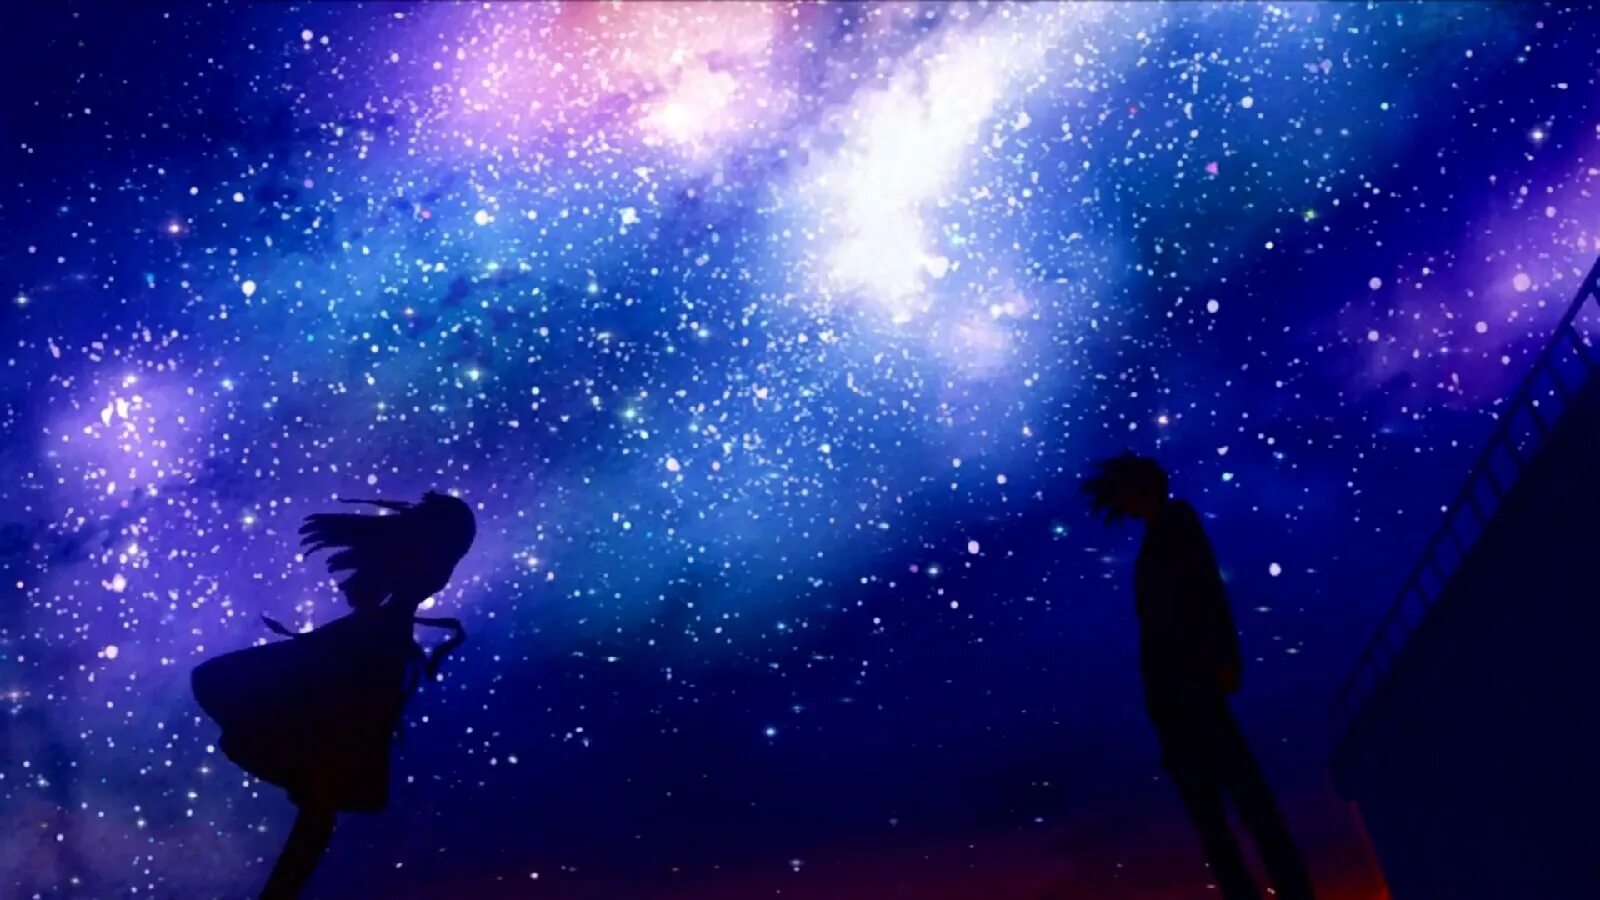 Звездное небо. Девушка и звездное небо. Ночное звездное небо. Человек на фоне звездного неба.